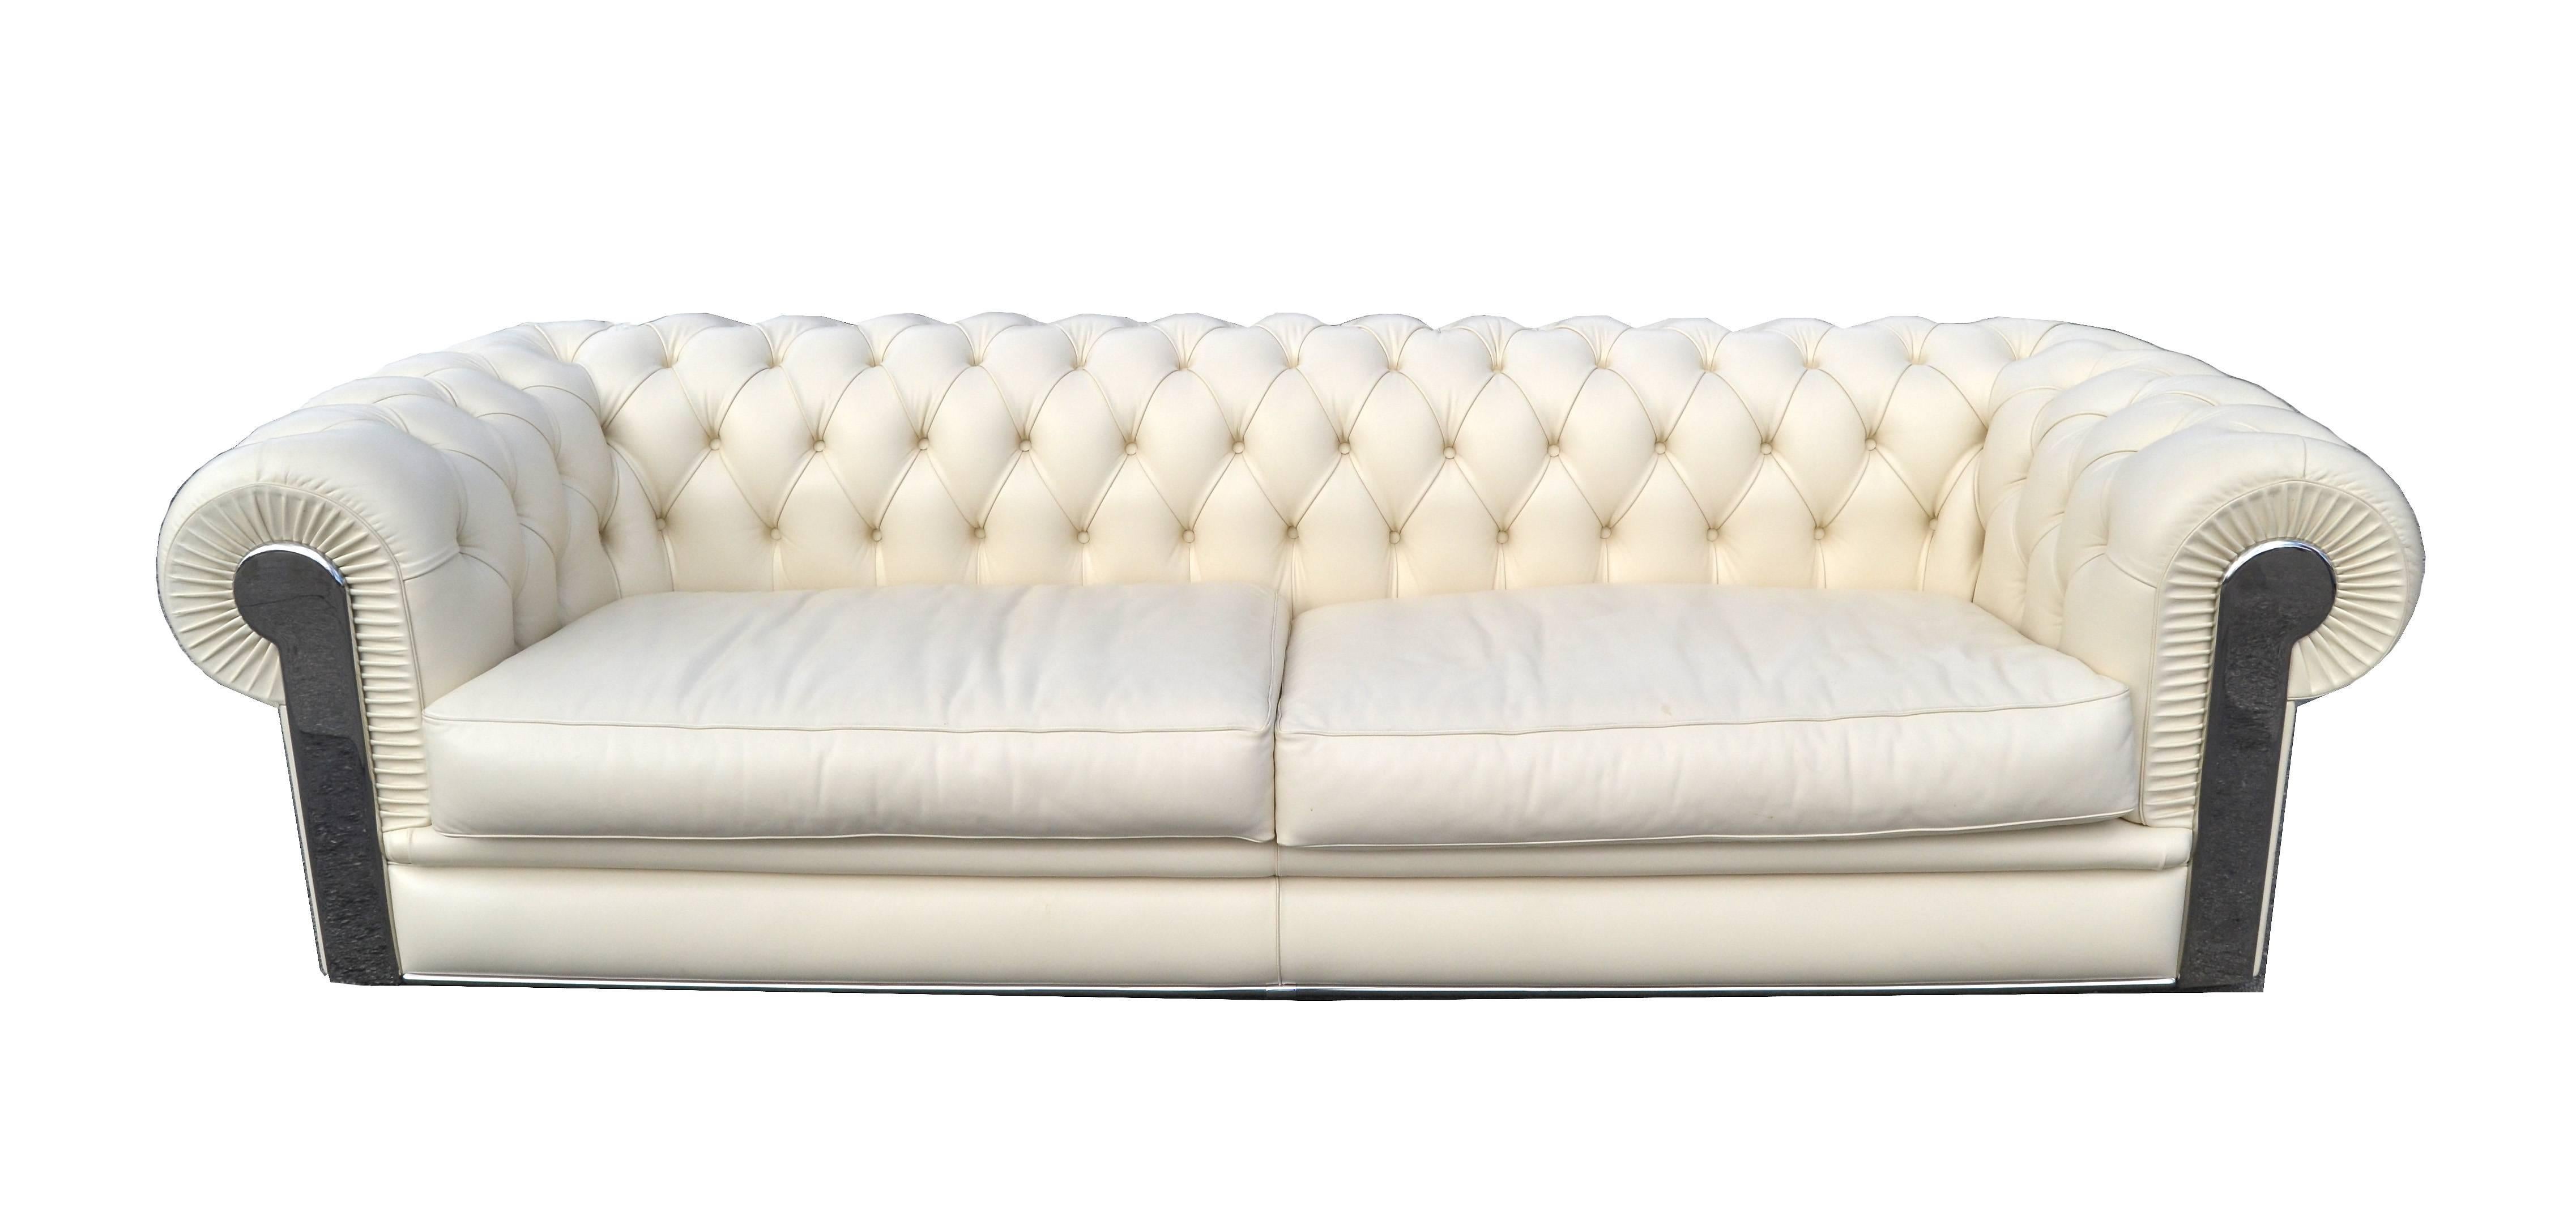 Fendi Casa Albino Tufted Leather Sofa in Chesterfield Style 1